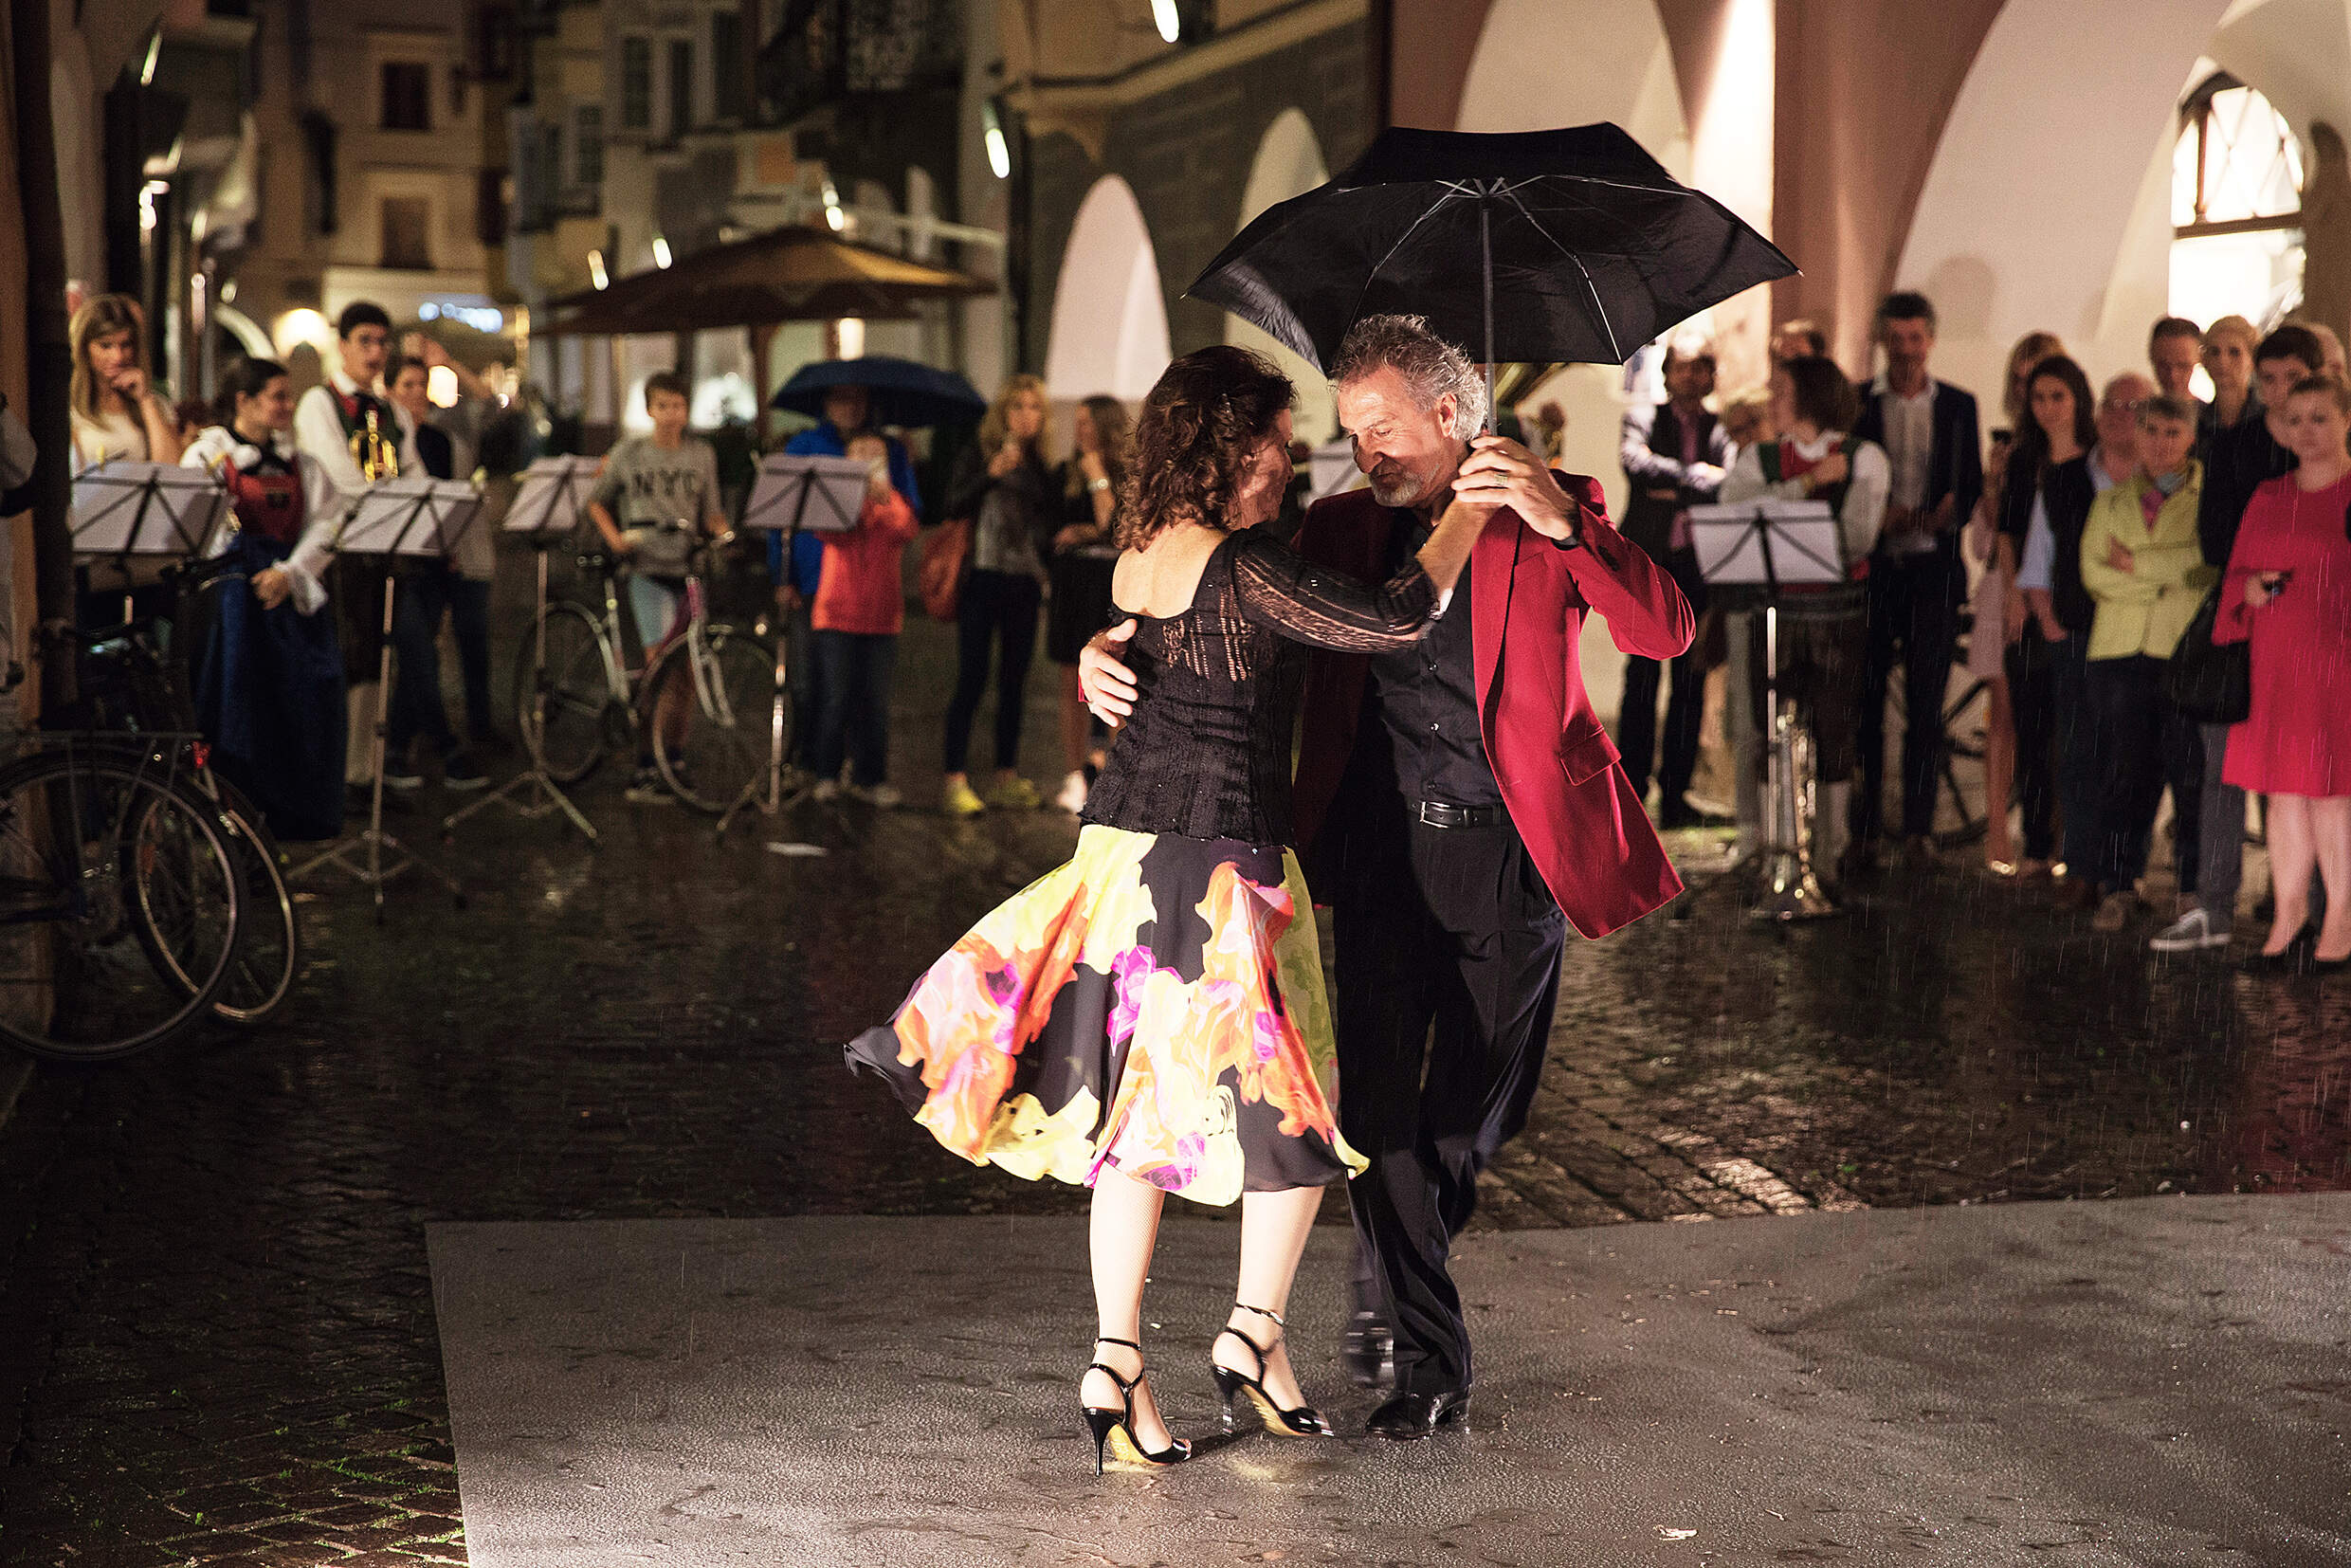 2018 Progetto Get Involved Galleria Municipale Bressanone Arte - Tango - Banda Musicale